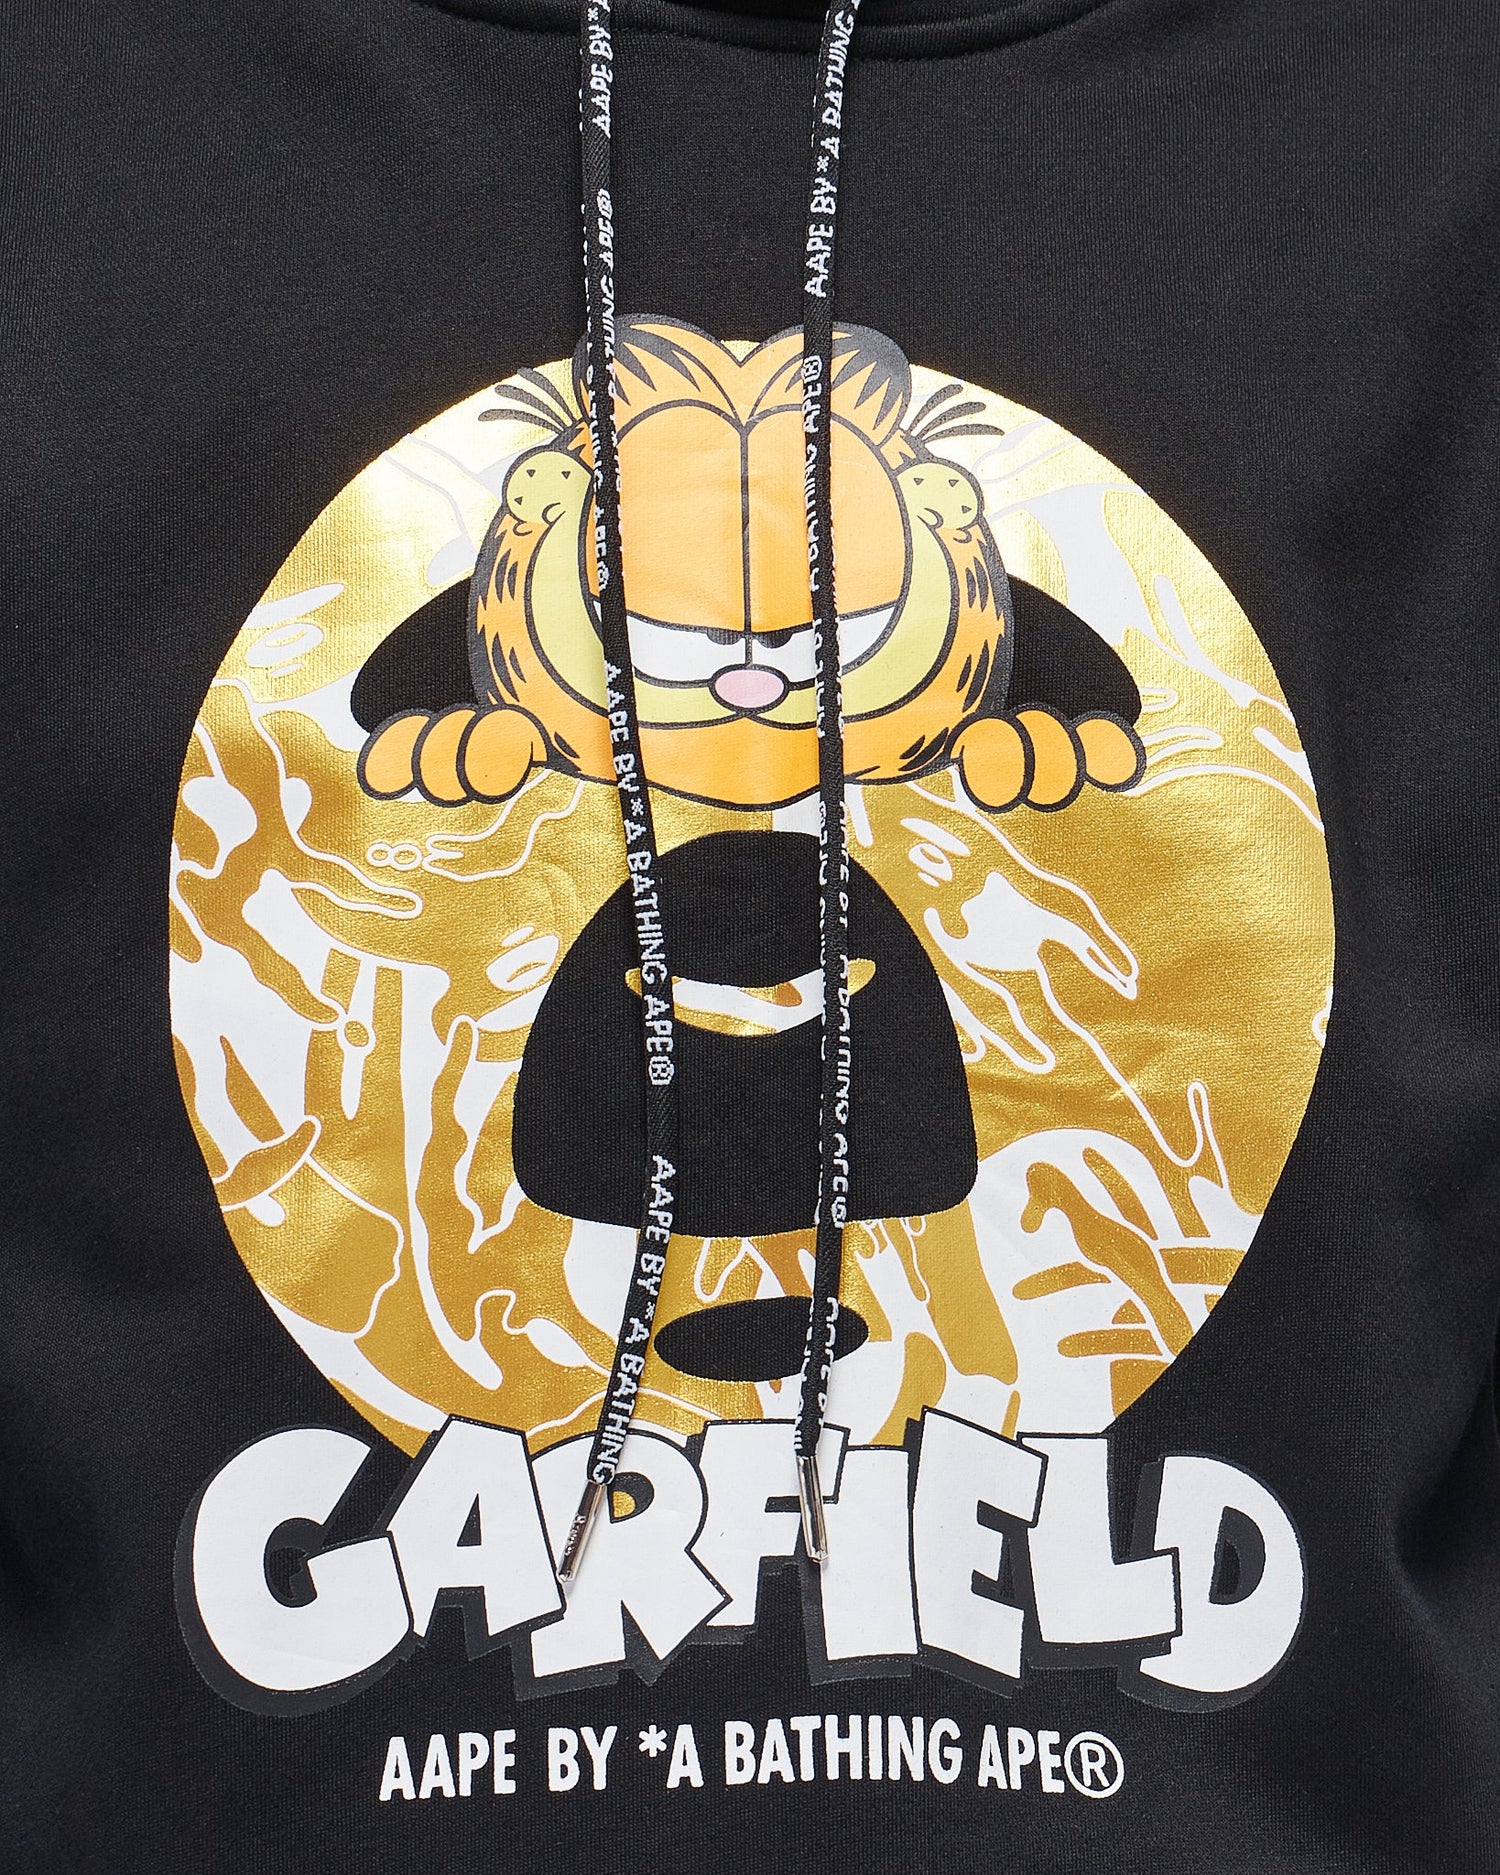 MOI OUTFIT-Garfield Printed Men Hoodie 35.90